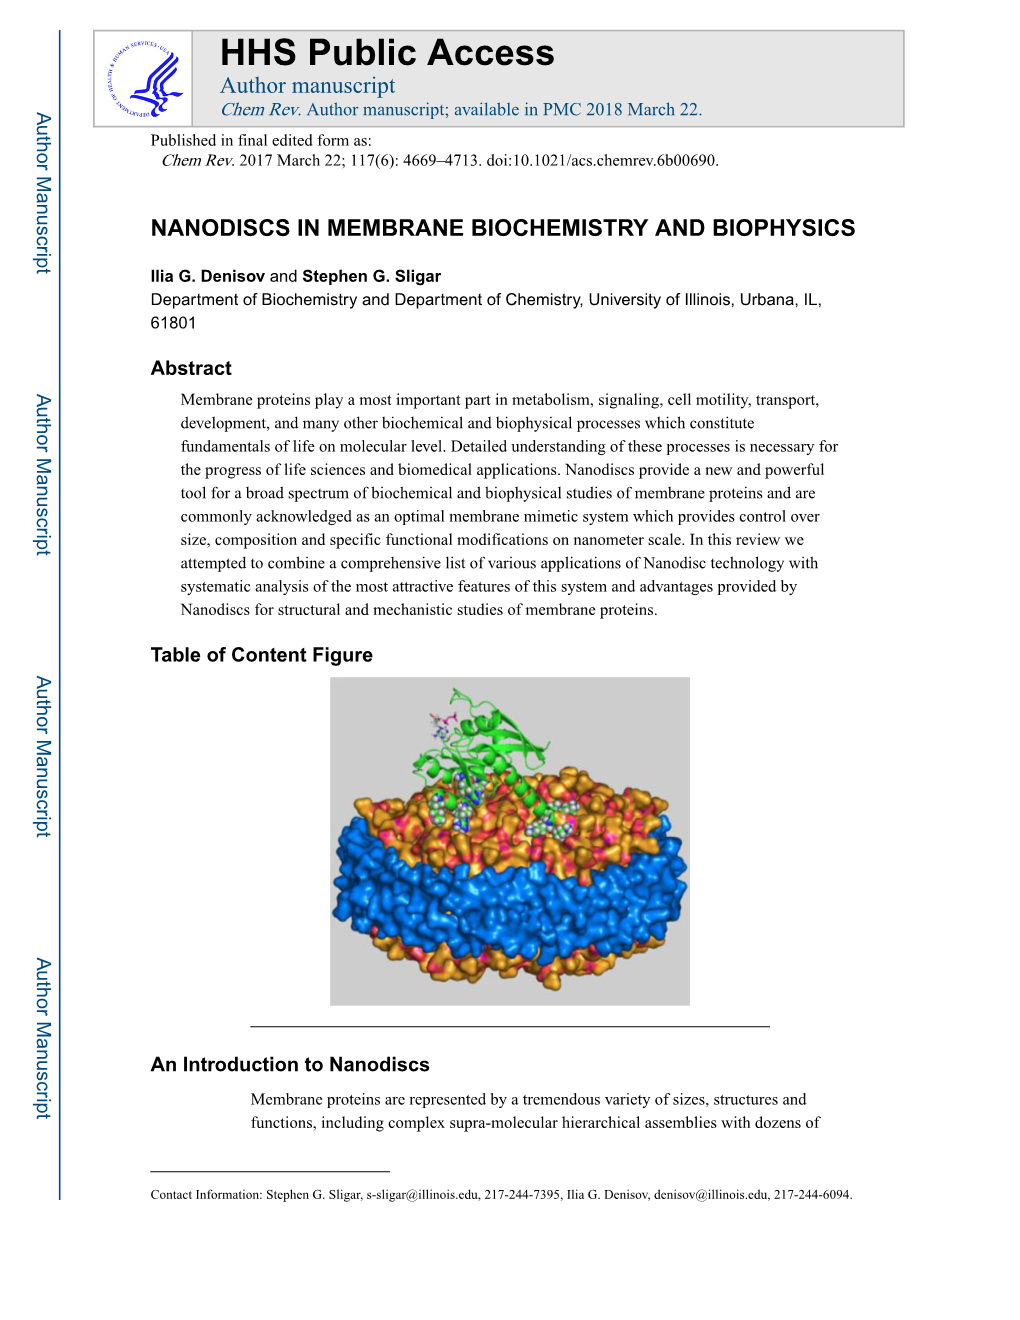 Nanodiscs in Membrane Biochemistry and Biophysics